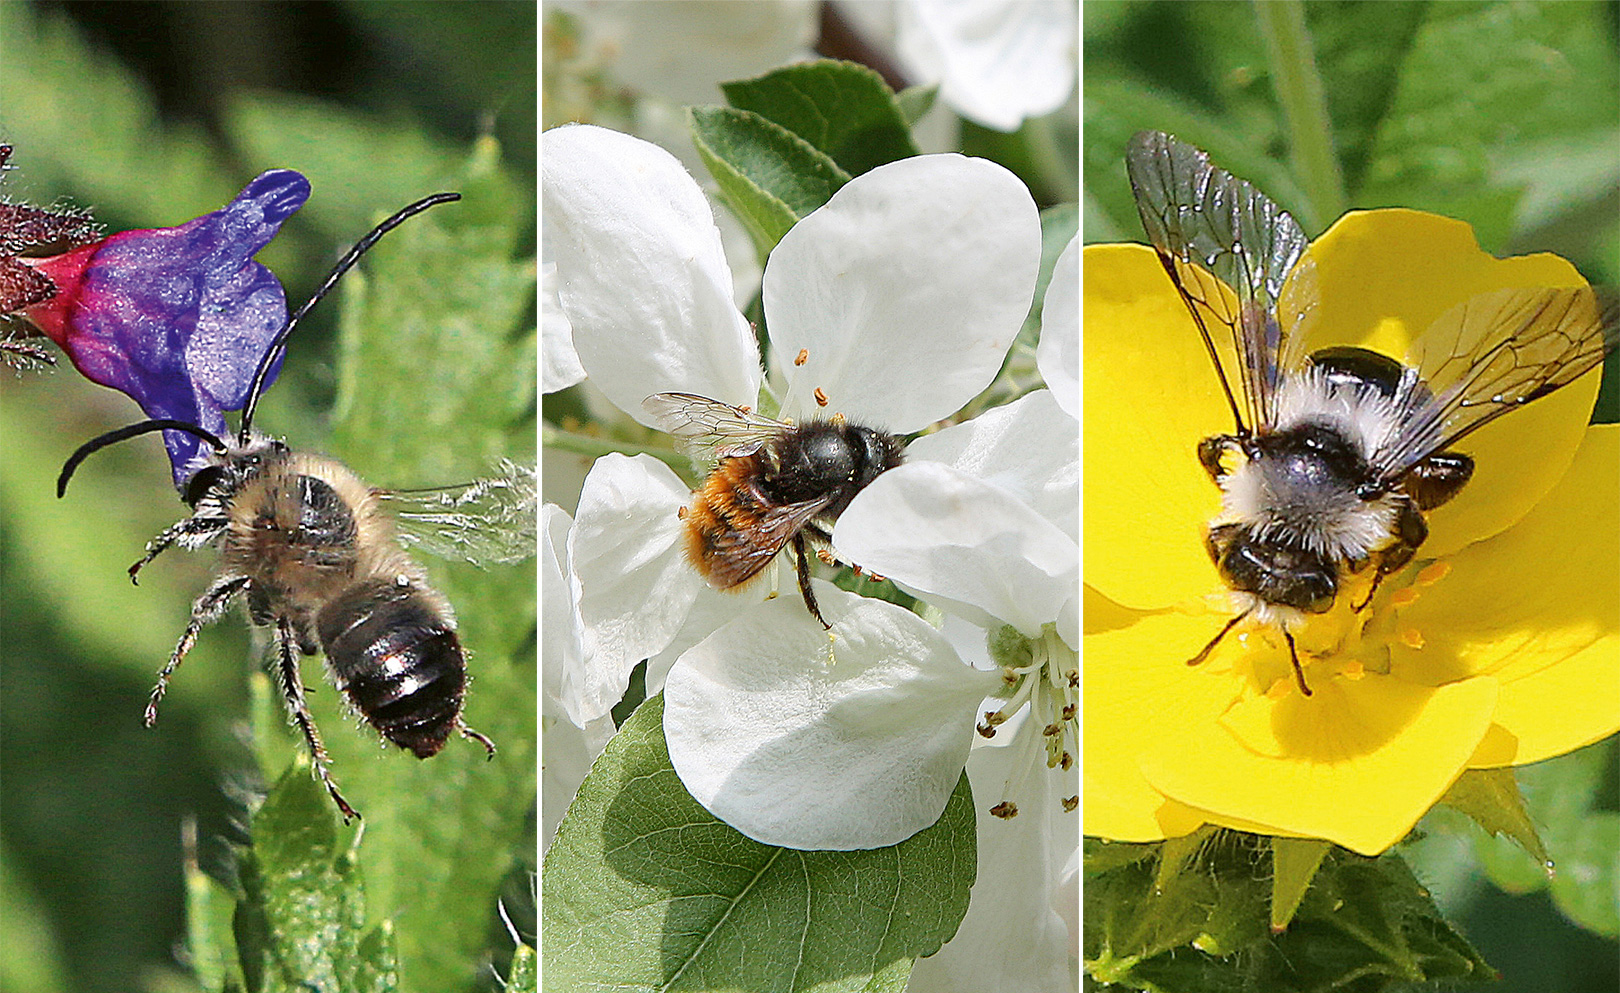 Von links nach rechts sieht man drei Wildbienenarten in der Natur. Langhornbiene, Mauerbiene, Gemeine Pelzbiene